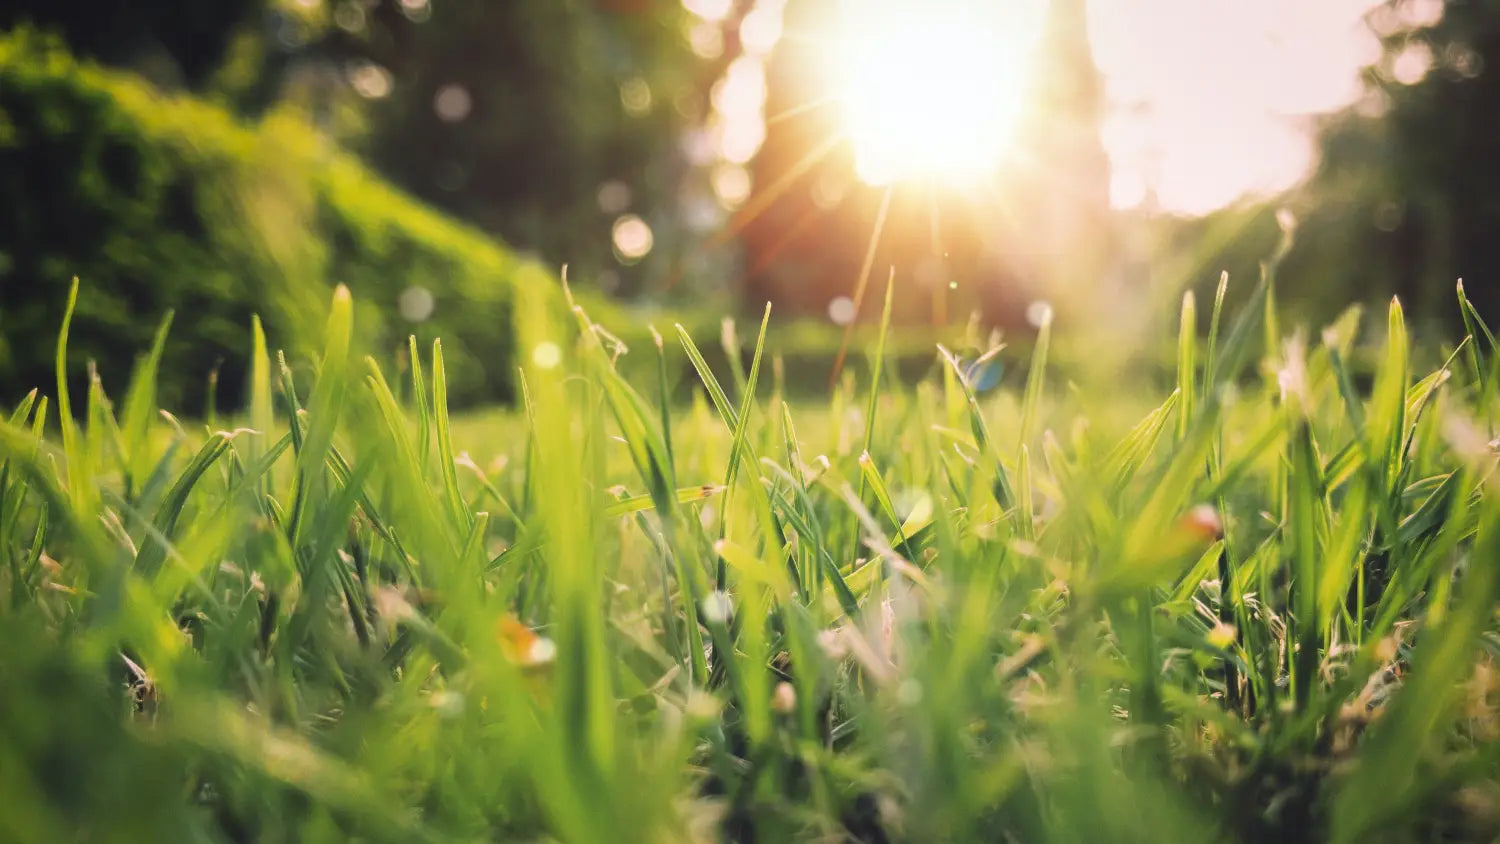 Sun shining on the grass. 